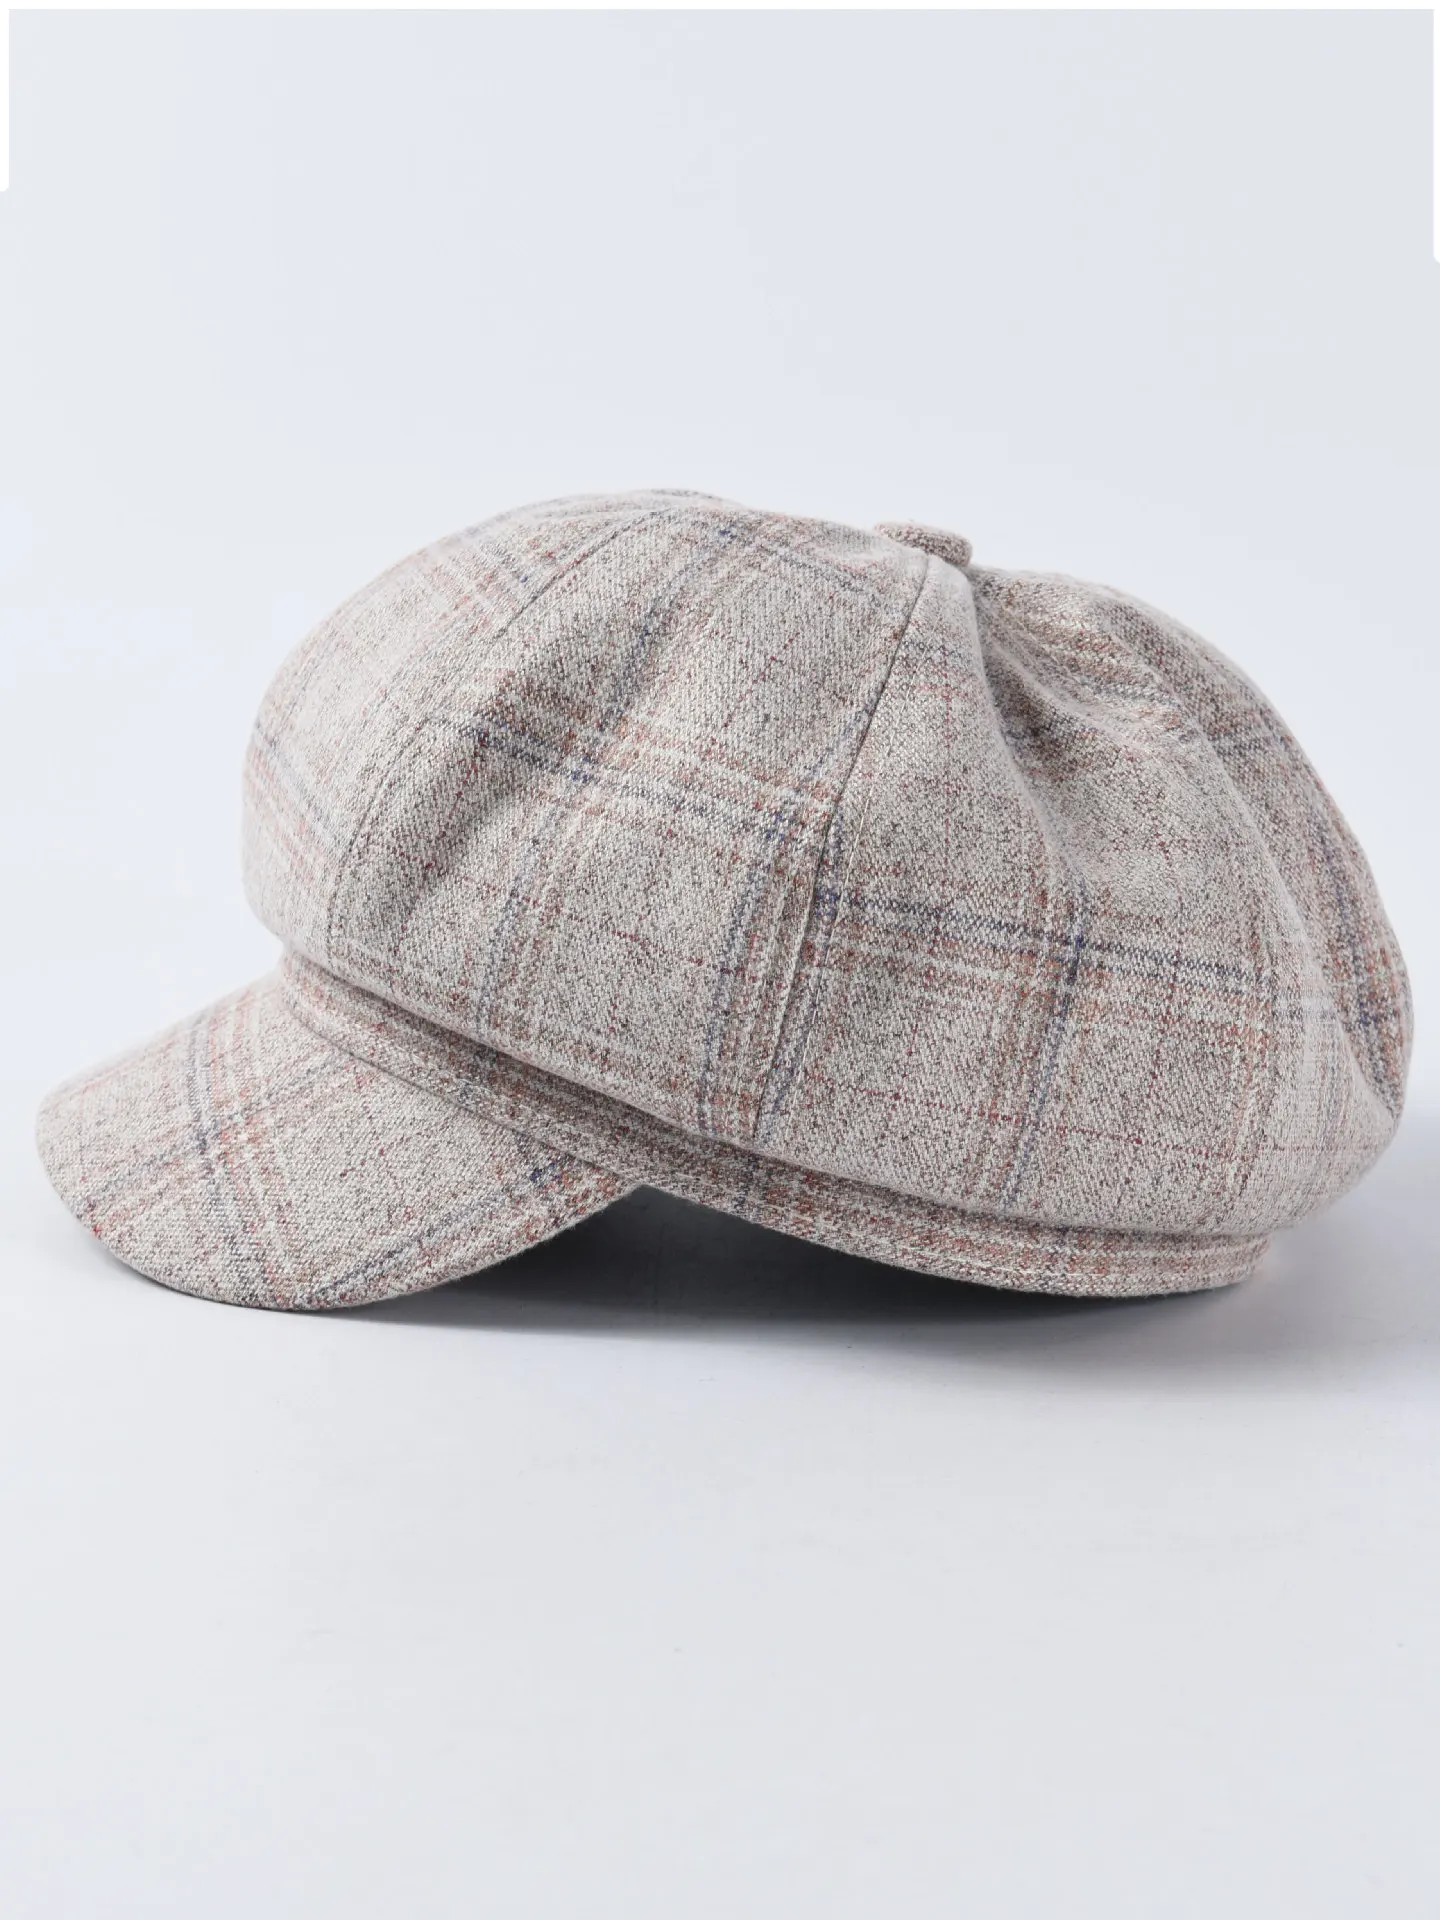 Шляпа Женская осенне-зимняя осенние шляпы Мужская шотландская шерсть восьмиугольная шляпа женская берет художника модная зимняя клетчатая шляпа